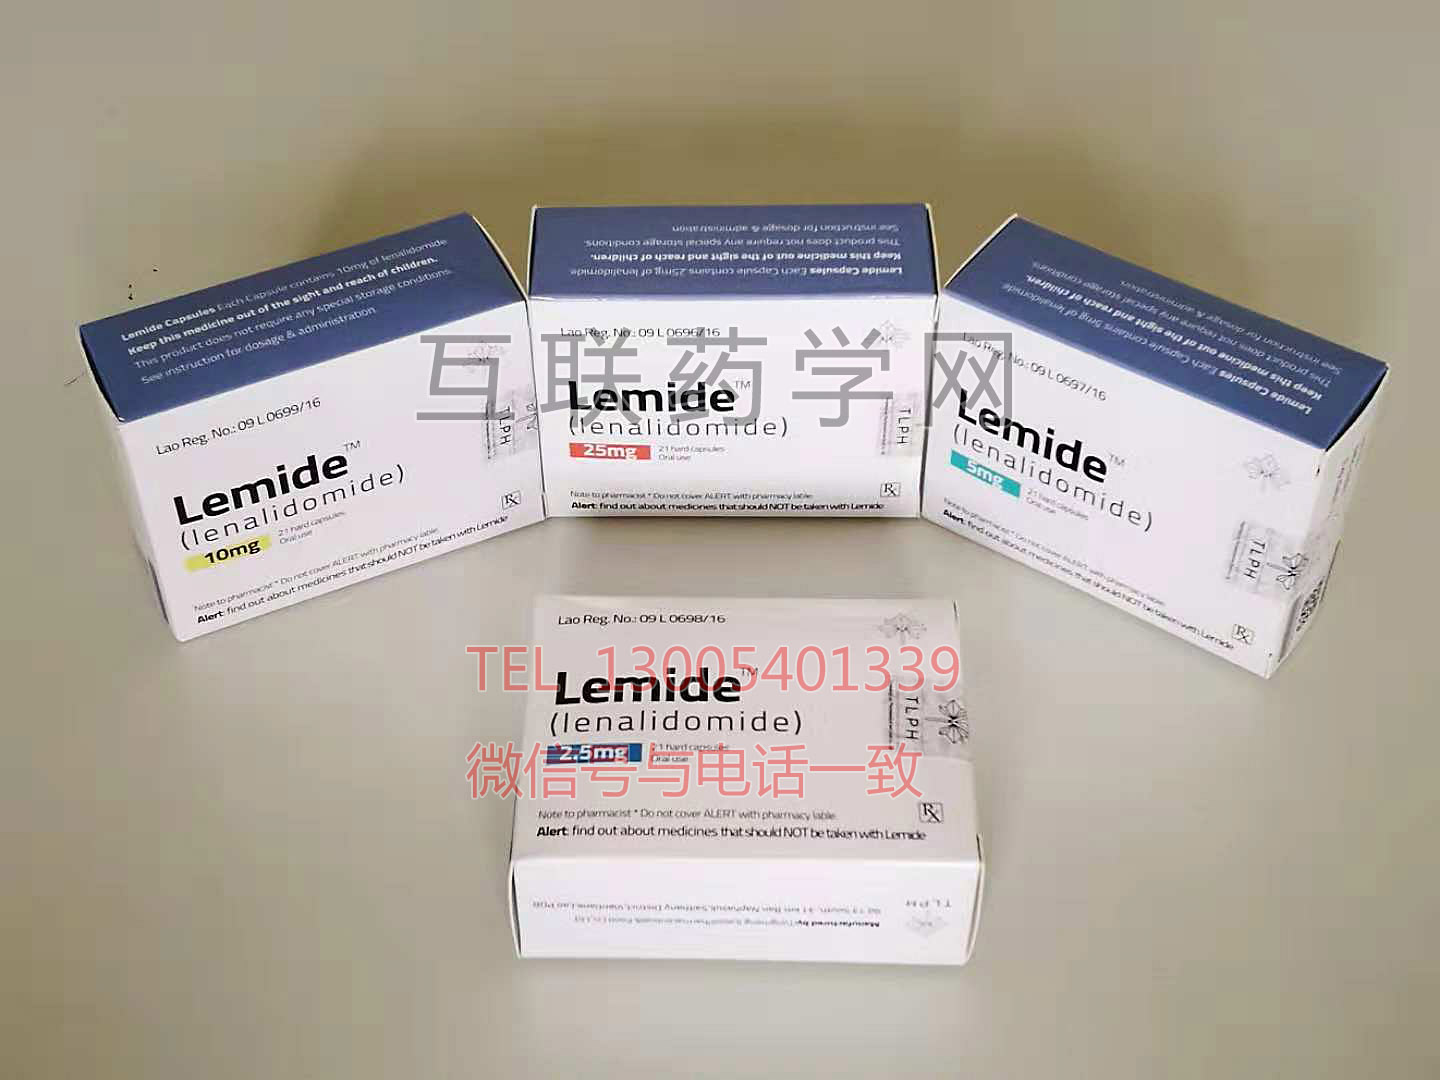 Lemide(lenalidomide)